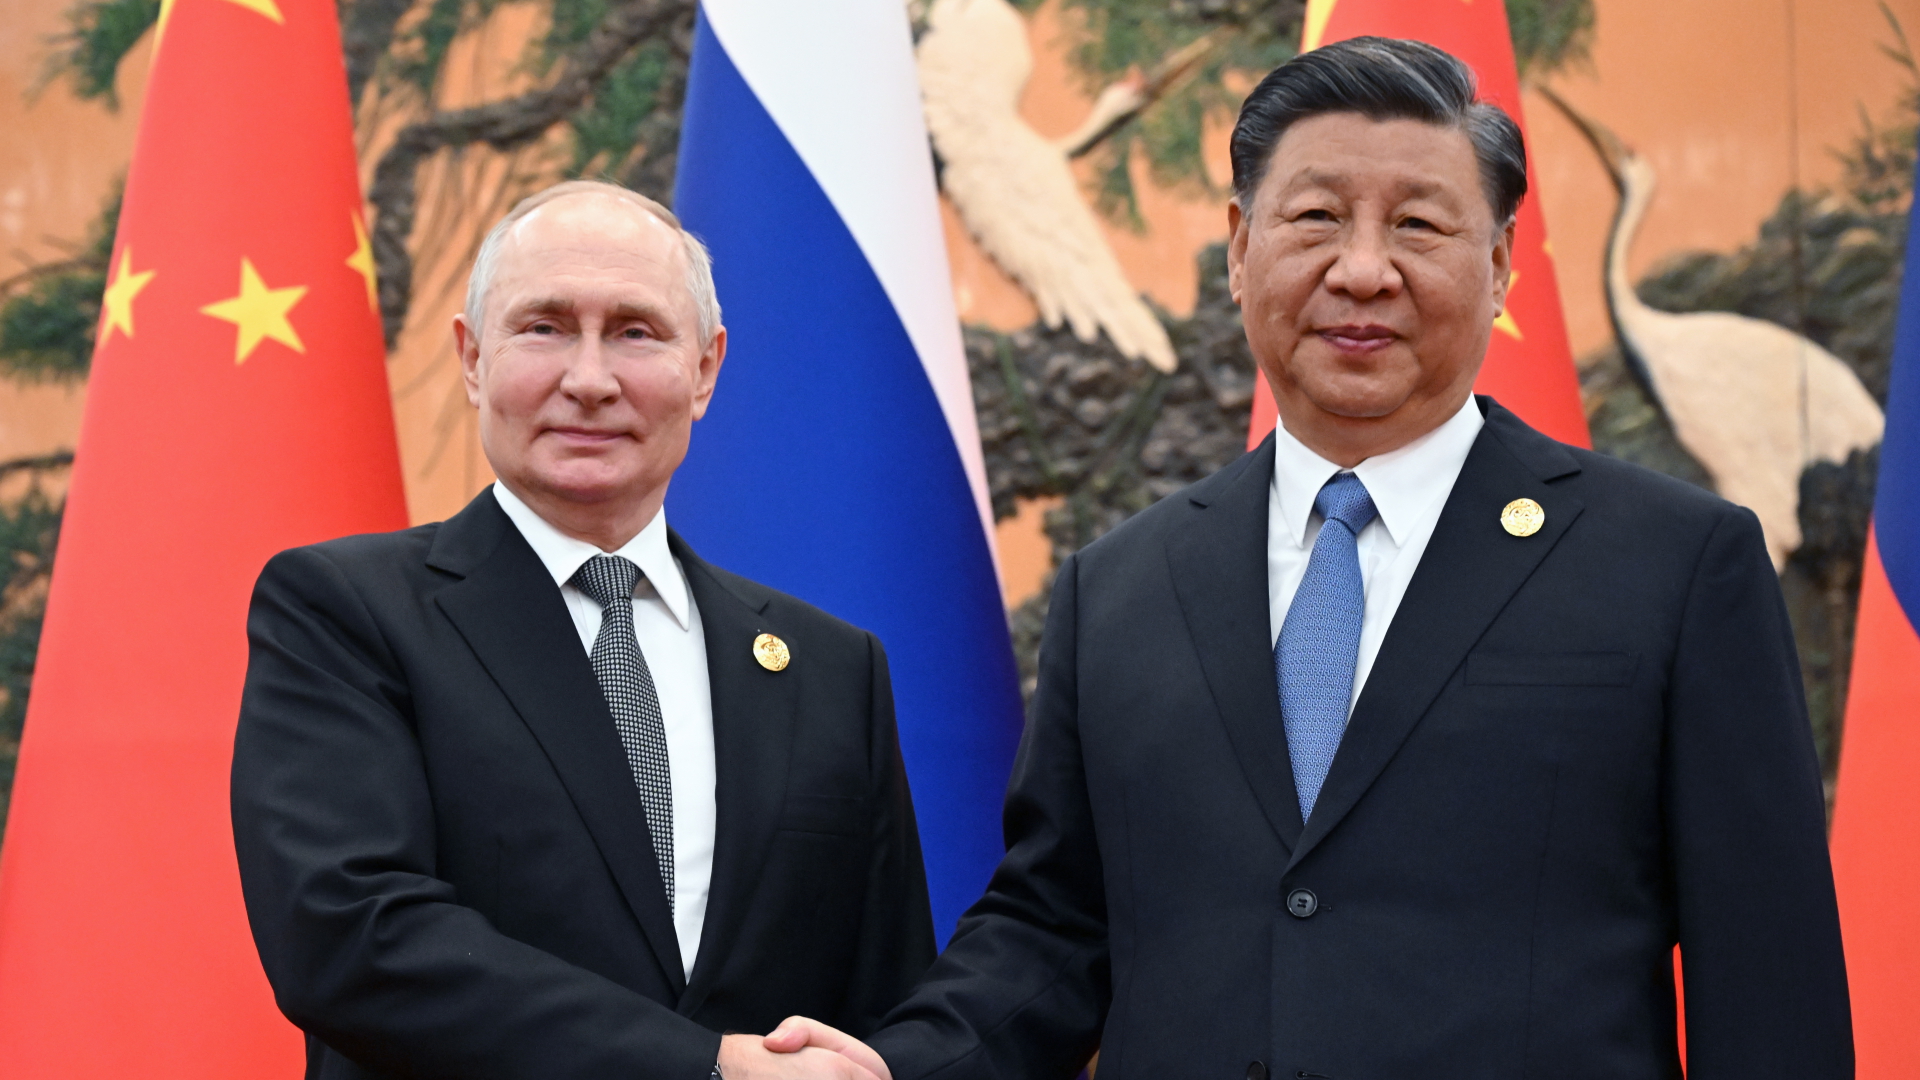 Wladmir Putin und Xi Jinpig schütteln sich die Hand vor den Flaggen Russlands und Chinas.